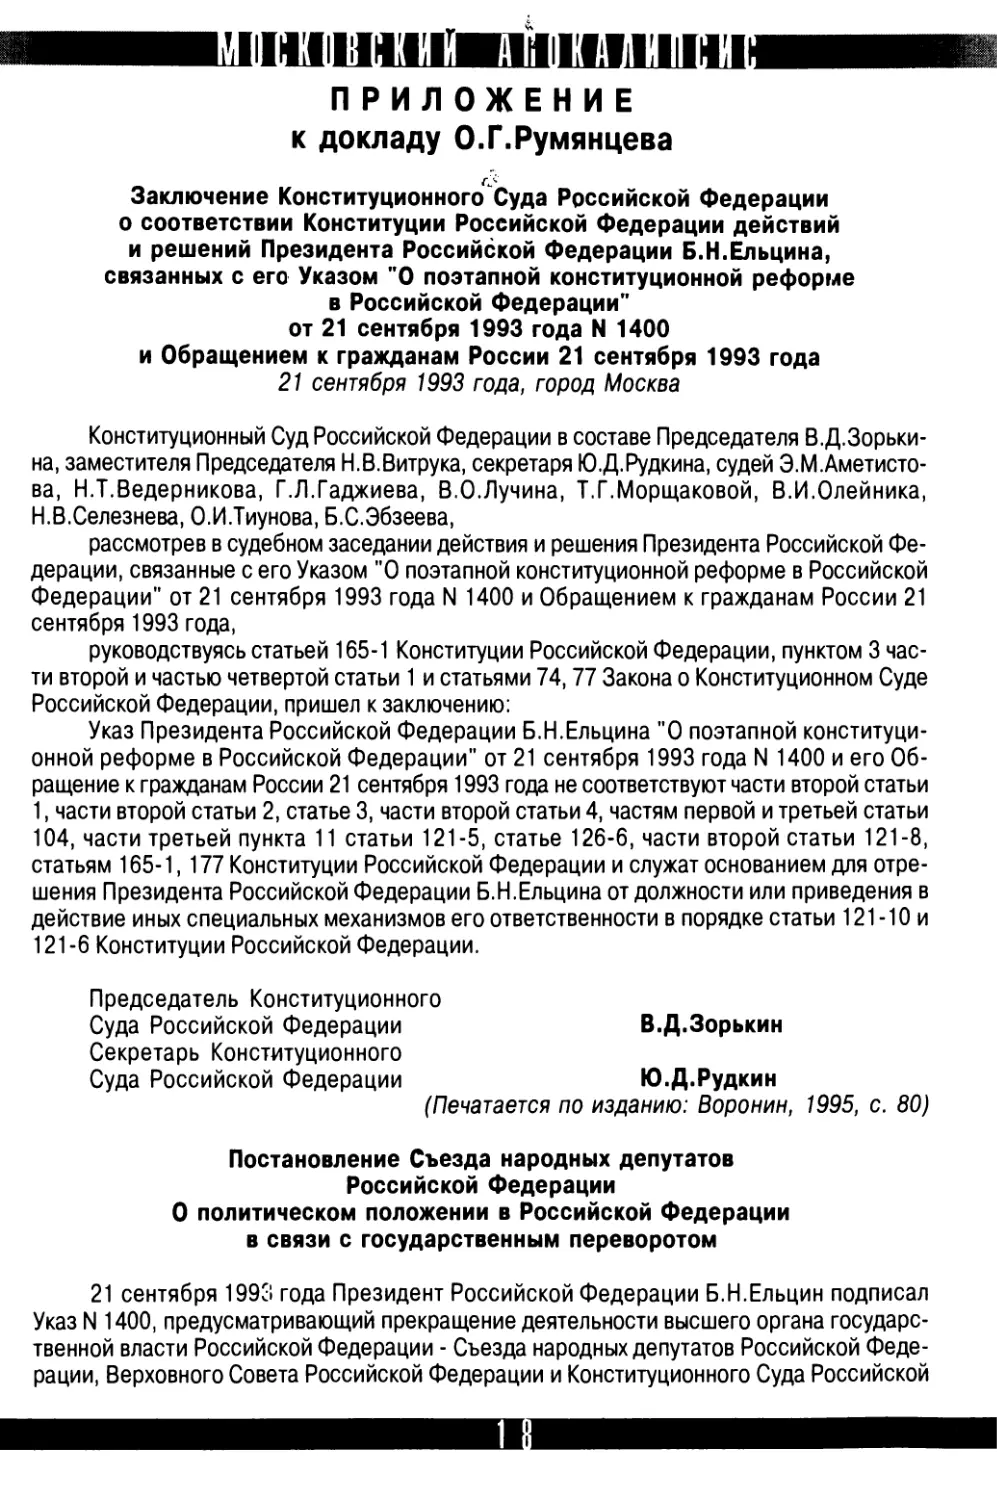 Приложение  к  докладу  О.Г.Румянцева